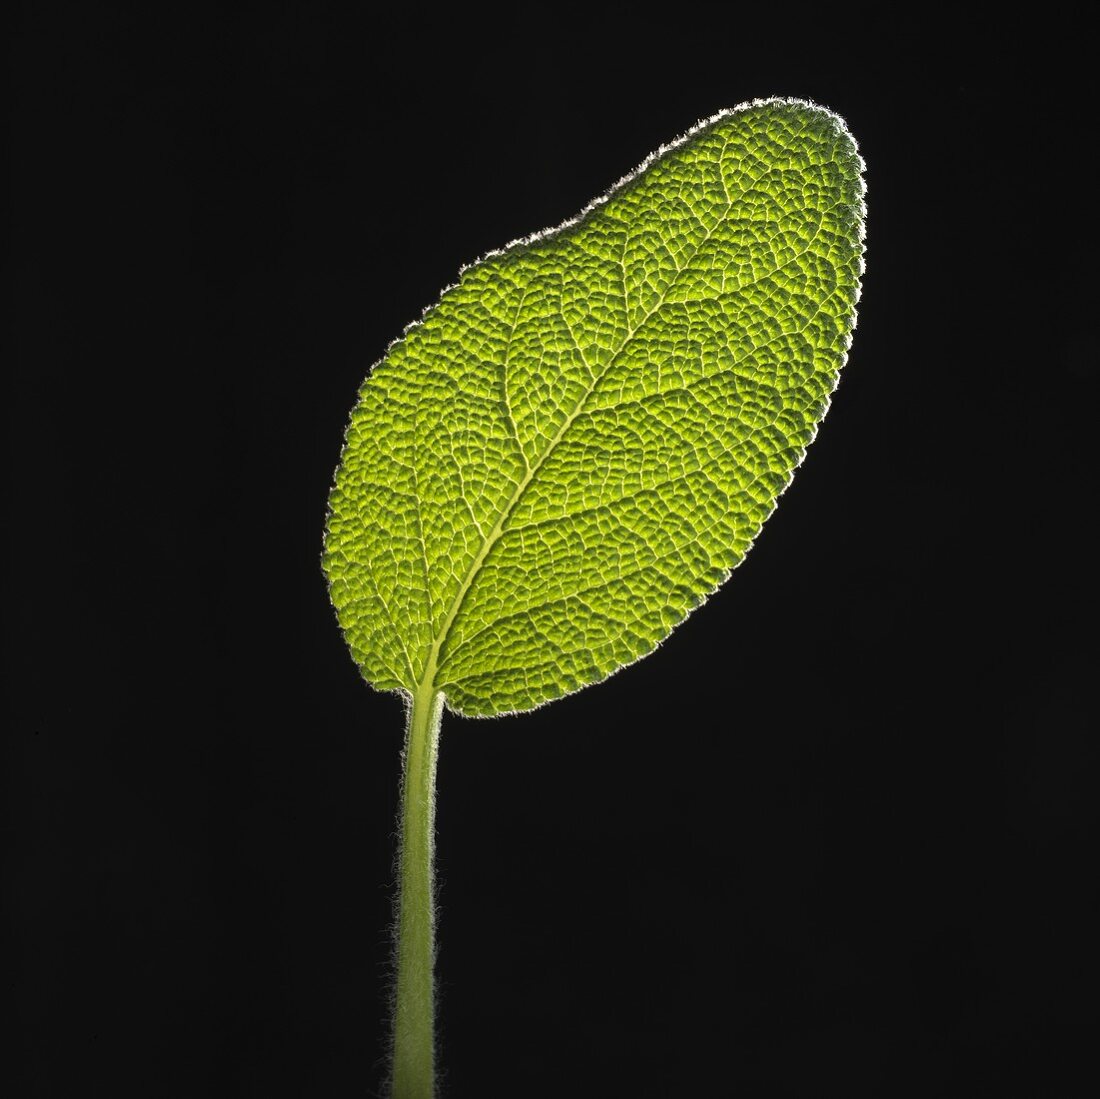 A sage leaf on black background